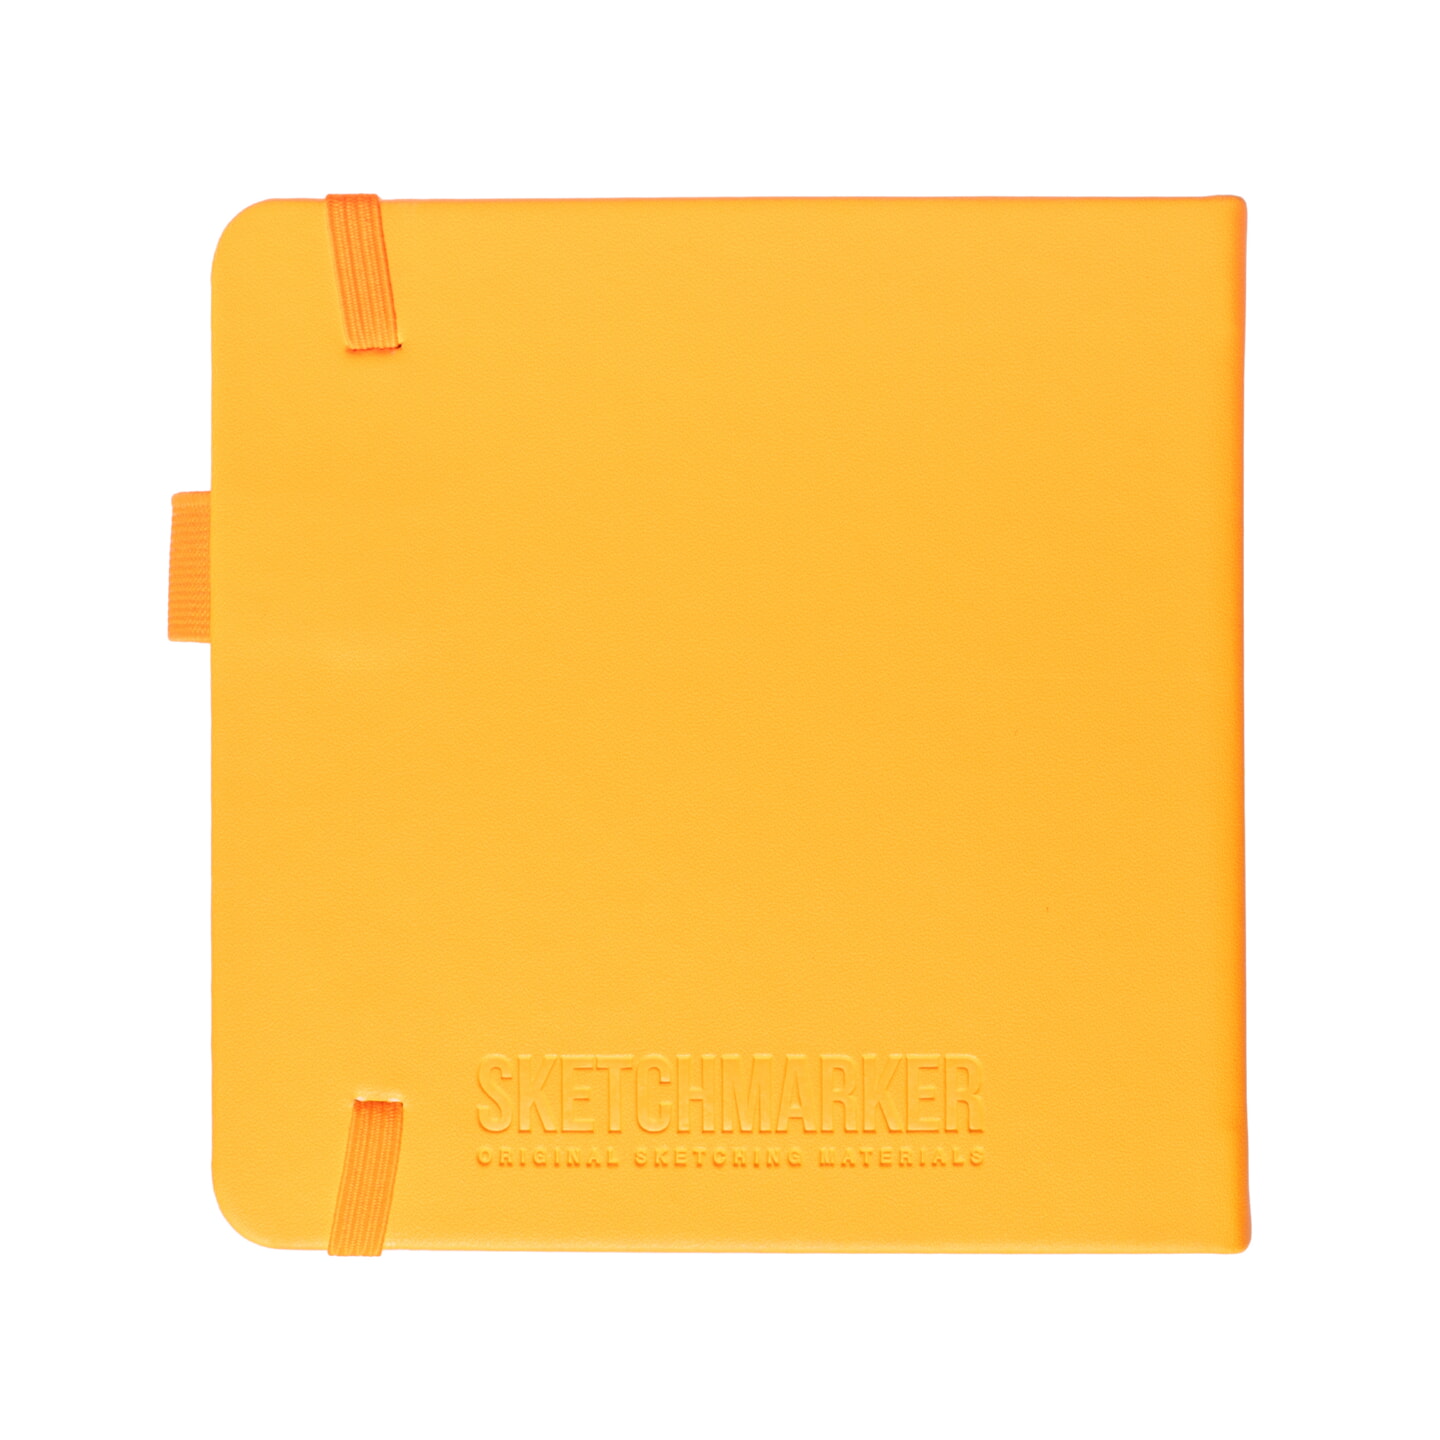 Блокнот для зарисовок Sketchmarker 140г/кв.м 12*12см 80л твердая обложка Неоновый апельсин